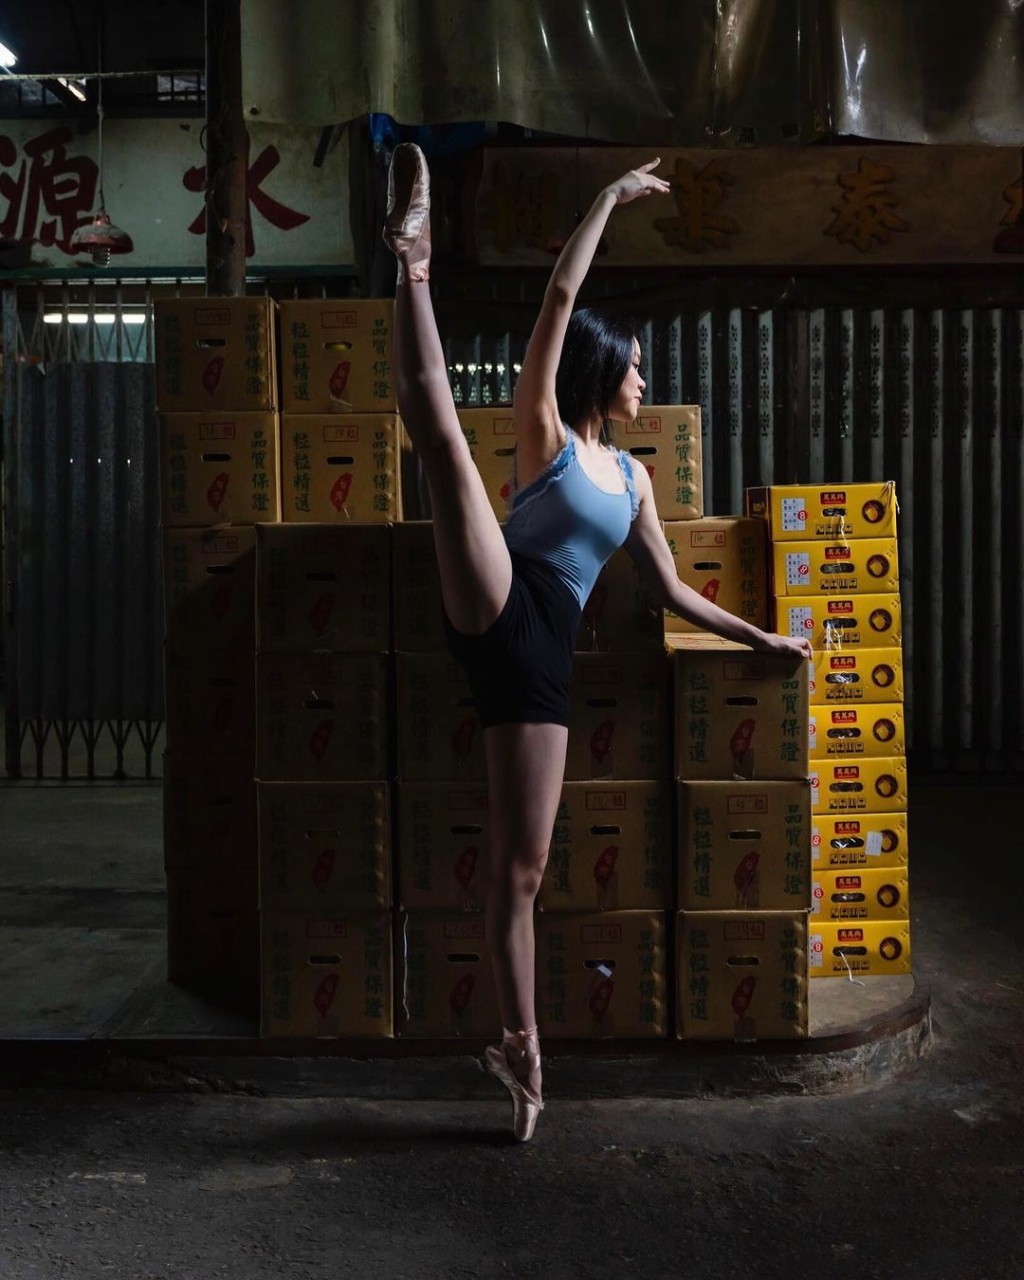 劉秀盈曾在果欄擺芭蕾舞甫士拍硬照。